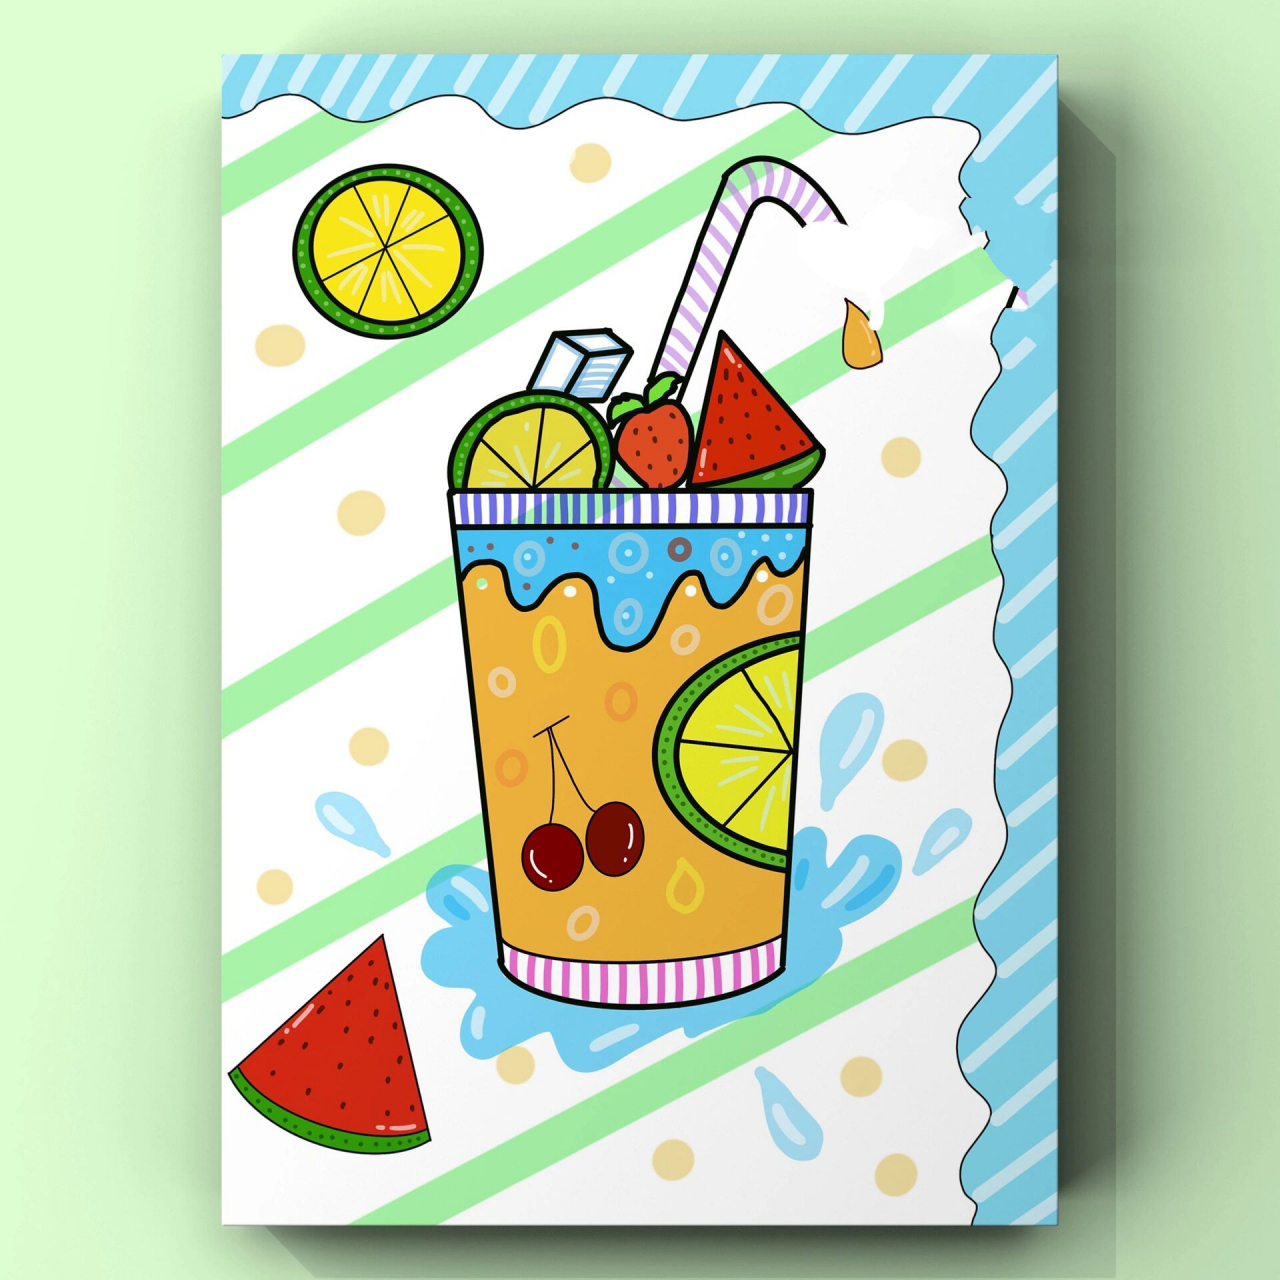 少儿创意绘画《果汁99》线稿步骤图 99夏天来啦,冰爽的果汁是必不